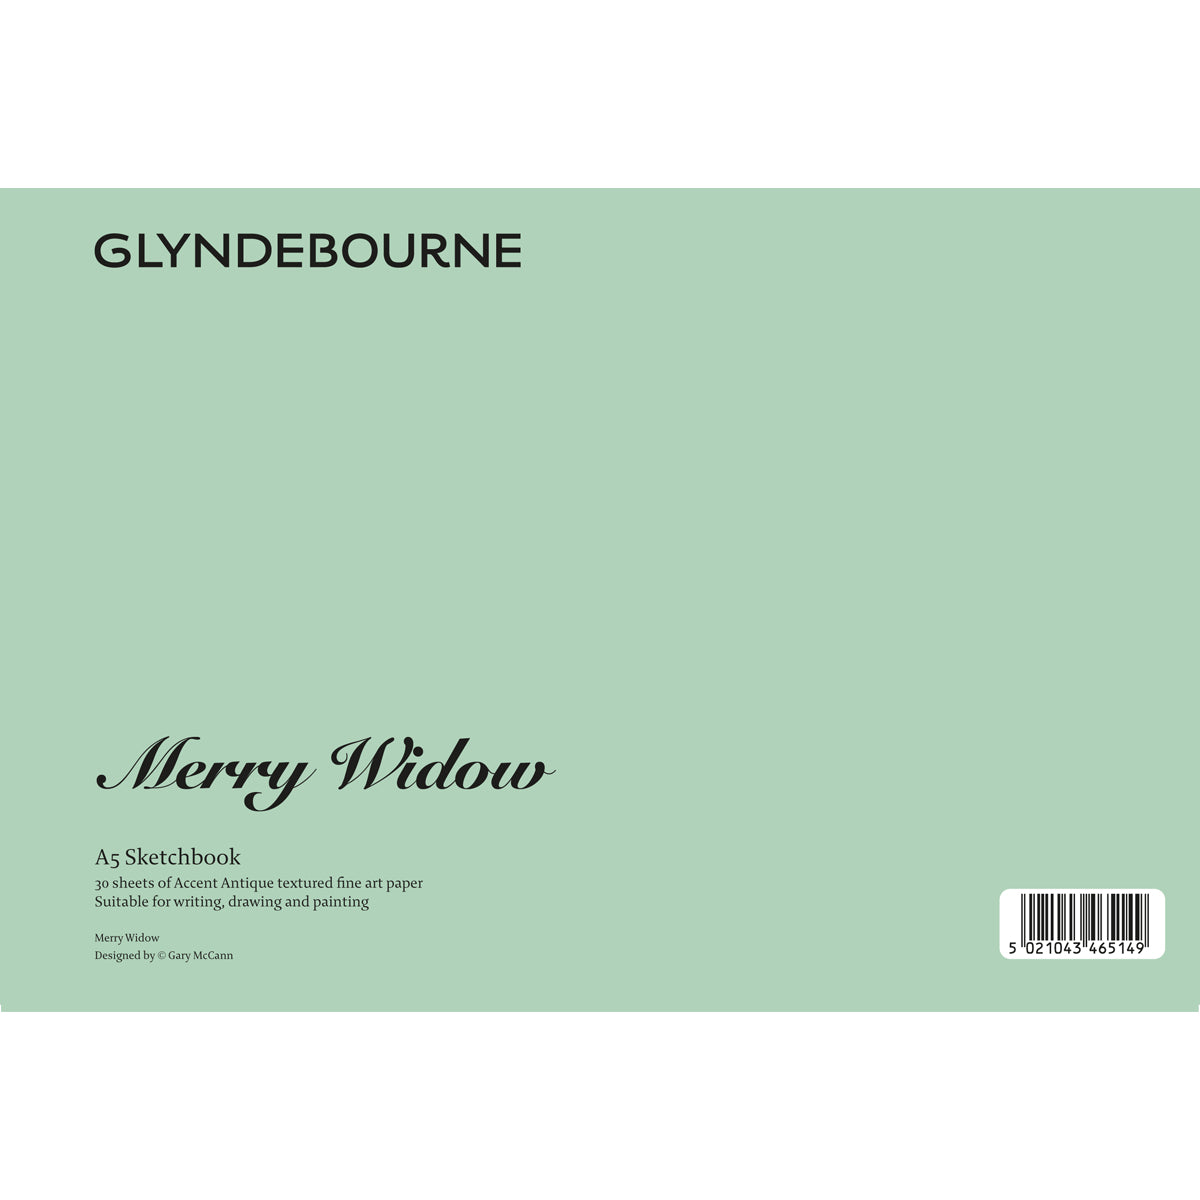 The Merry Widow Glyndebourne Sketchbook